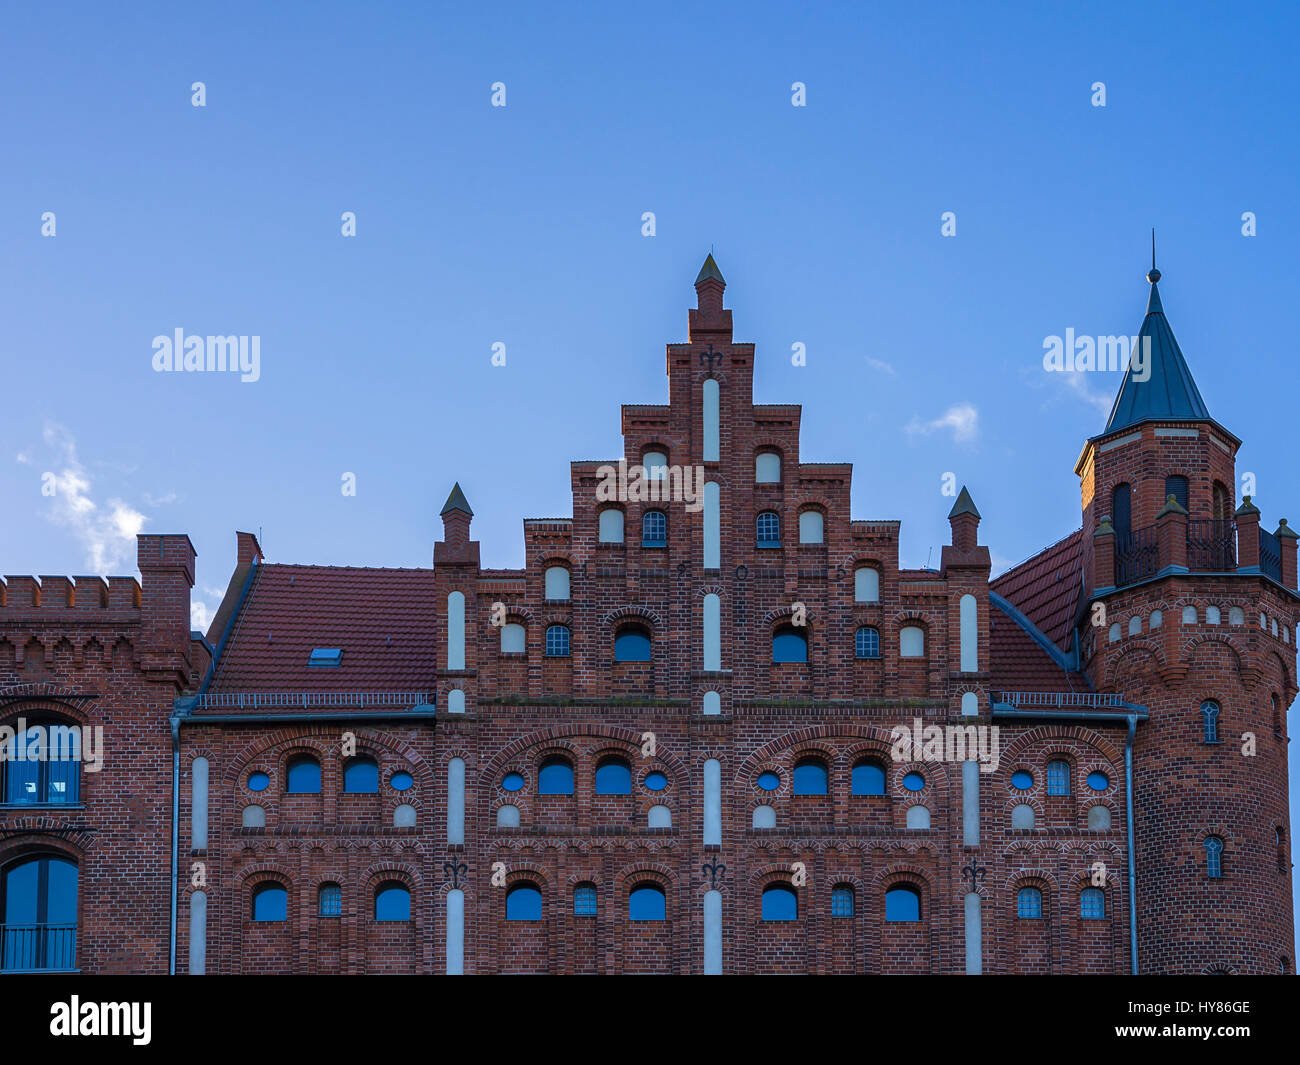 Storica architettura anseatica nel porto di Stralsund, Mecklenburg-Pomerania, Germania. Foto Stock